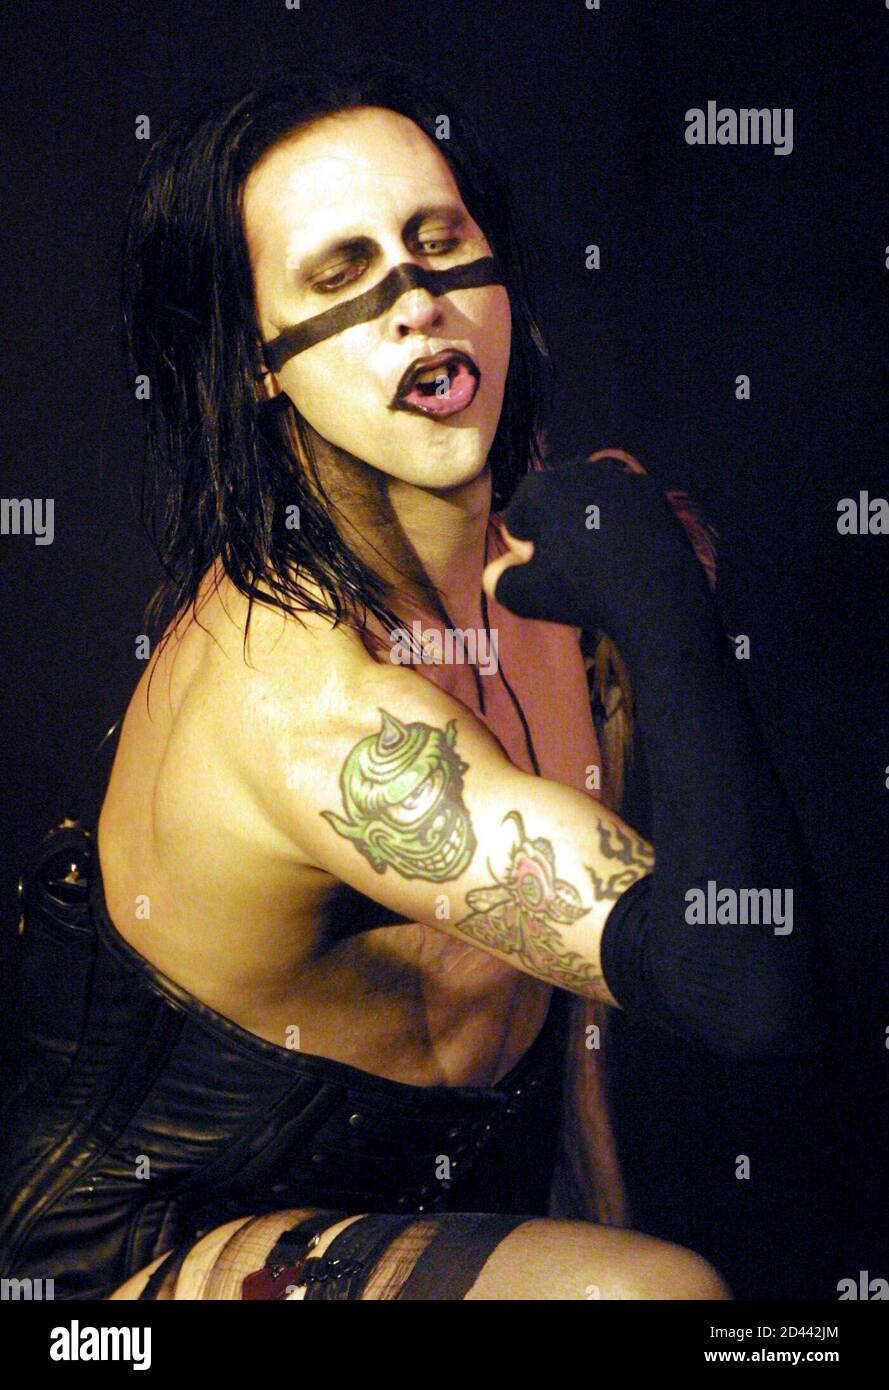 Marilyn Manson si esibisce durante uno spettacolo esaurito il 1° luglio 2001 presso la House of Blues all'interno del Mandalay Bay Resort & Casino di Las Vegas. Manson sta girando a sostegno del suo album 'Holy Wood: In the Valley of the Shadow of Death. Foto Stock